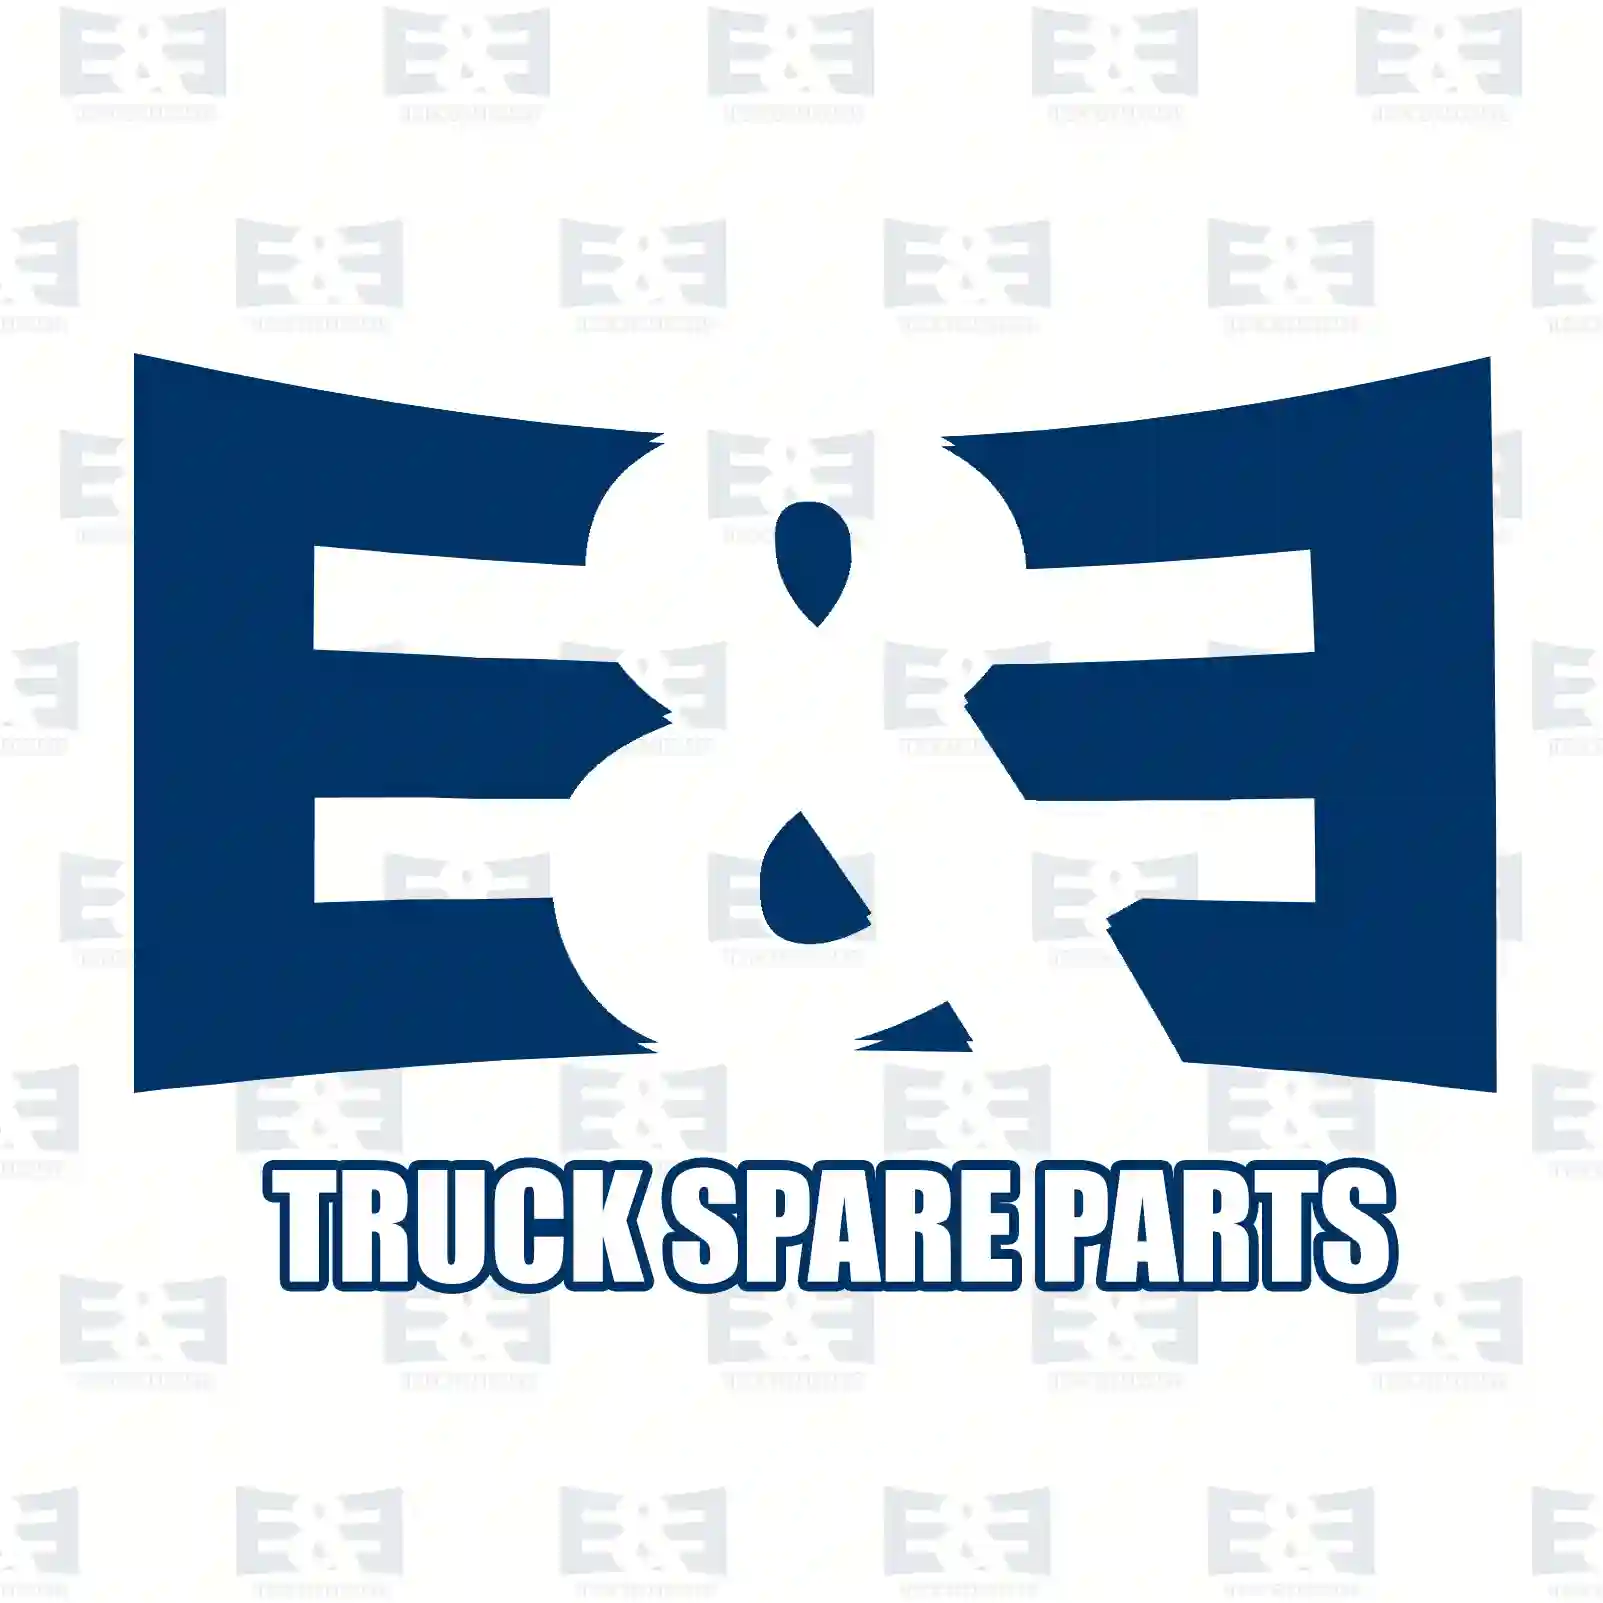 Brake disc, 2E2296366, 4254210012, , , , , , , , , ||  2E2296366 E&E Truck Spare Parts | Truck Spare Parts, Auotomotive Spare Parts Brake disc, 2E2296366, 4254210012, , , , , , , , , ||  2E2296366 E&E Truck Spare Parts | Truck Spare Parts, Auotomotive Spare Parts